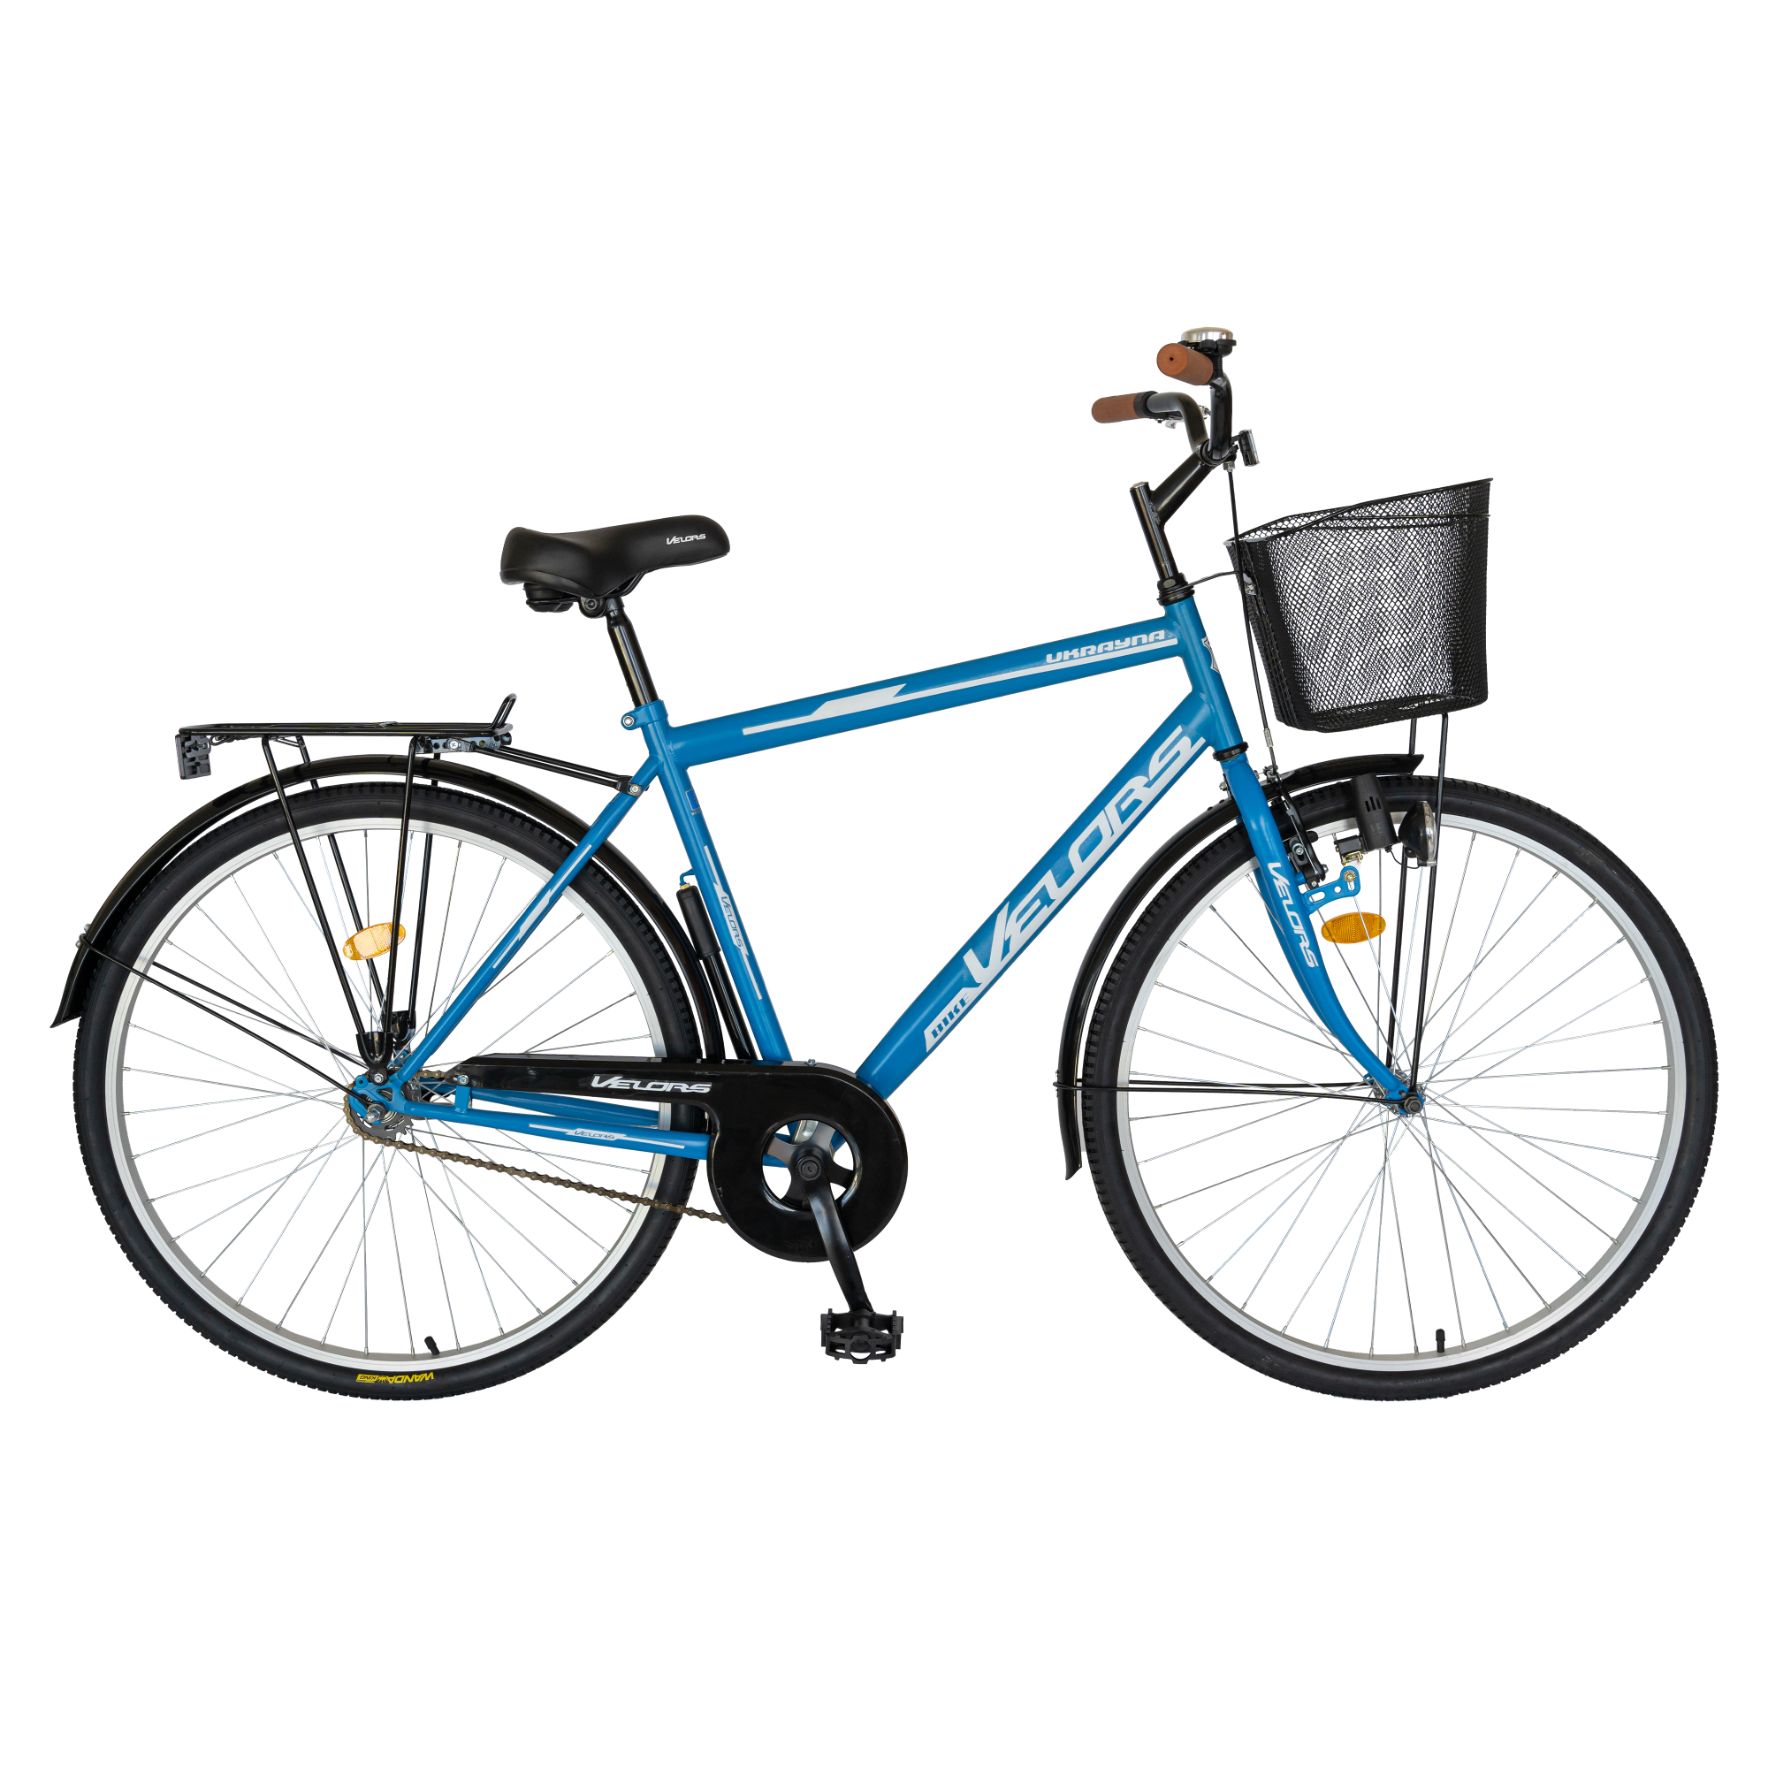 BICICLETE DE ORAS - Bicicleta de oras (City) Velors Ukrayna V2893A 28", Albastru/Alb, https:carpatsport.ro